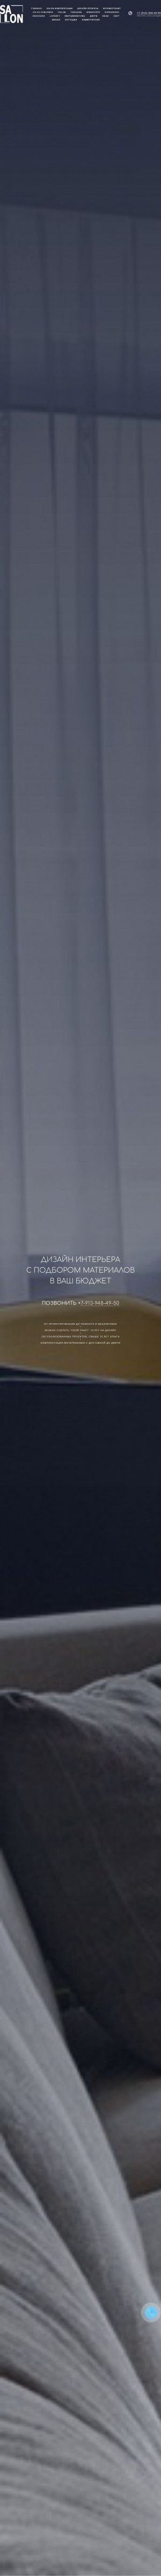 Предпросмотр для 380-94-08.ru — Готовые Решения